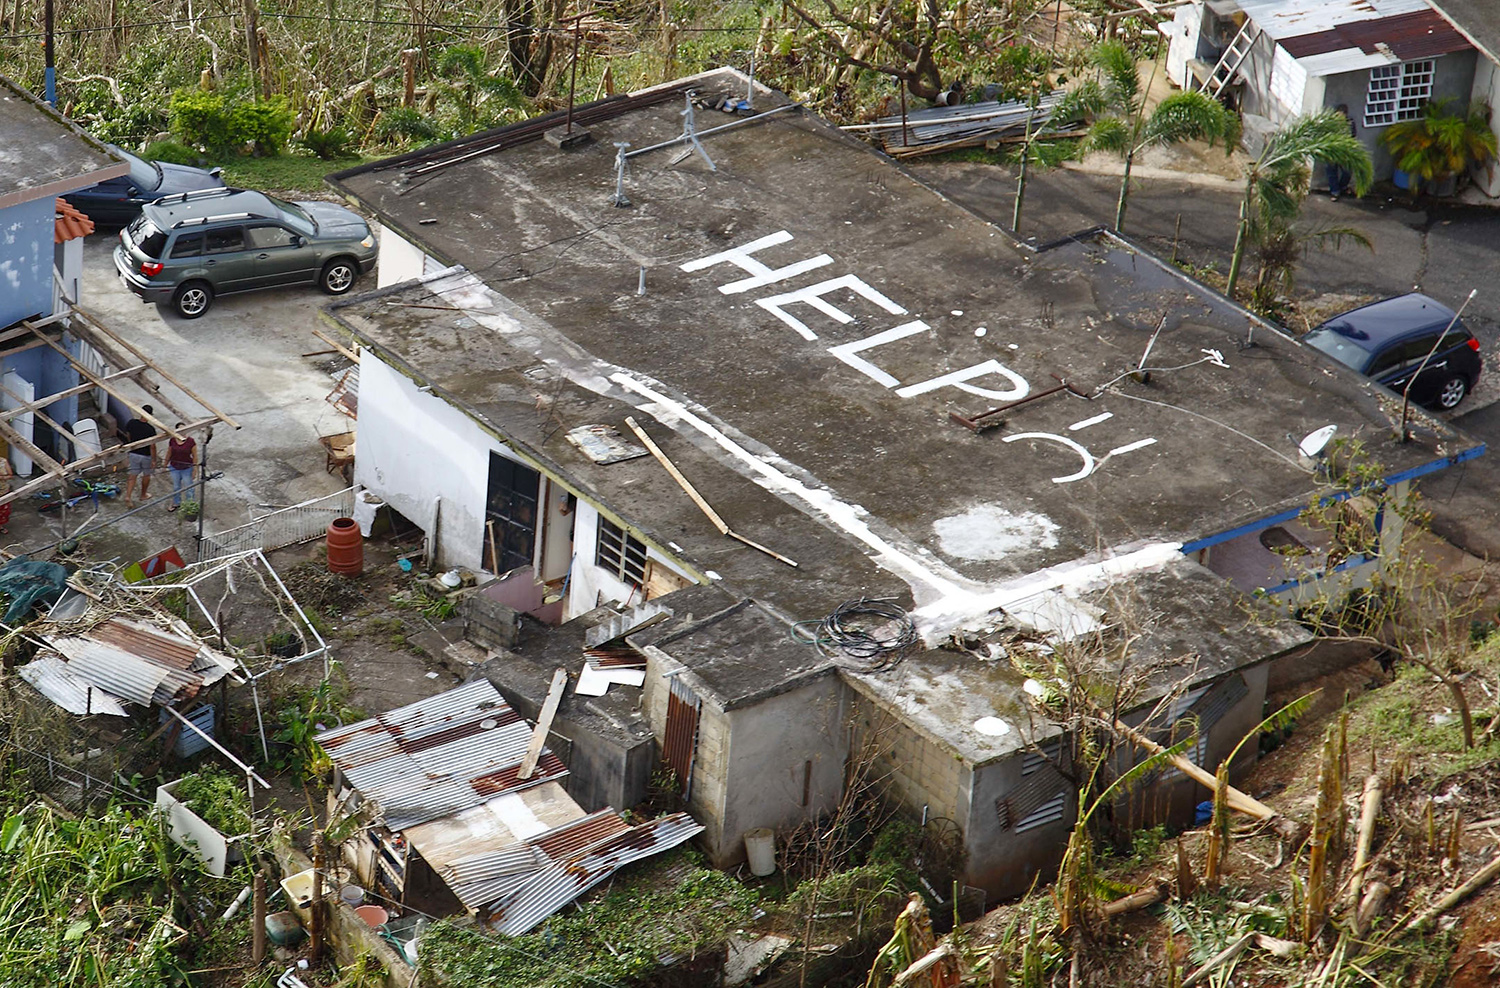 Vista aérea de una casa en Puerto Rico. Alguien ha escrito “Help” en el techo para que lo vean los aviones y helicópteros de rescate. Hay escombros y vegetación caída alrededor de la casa.